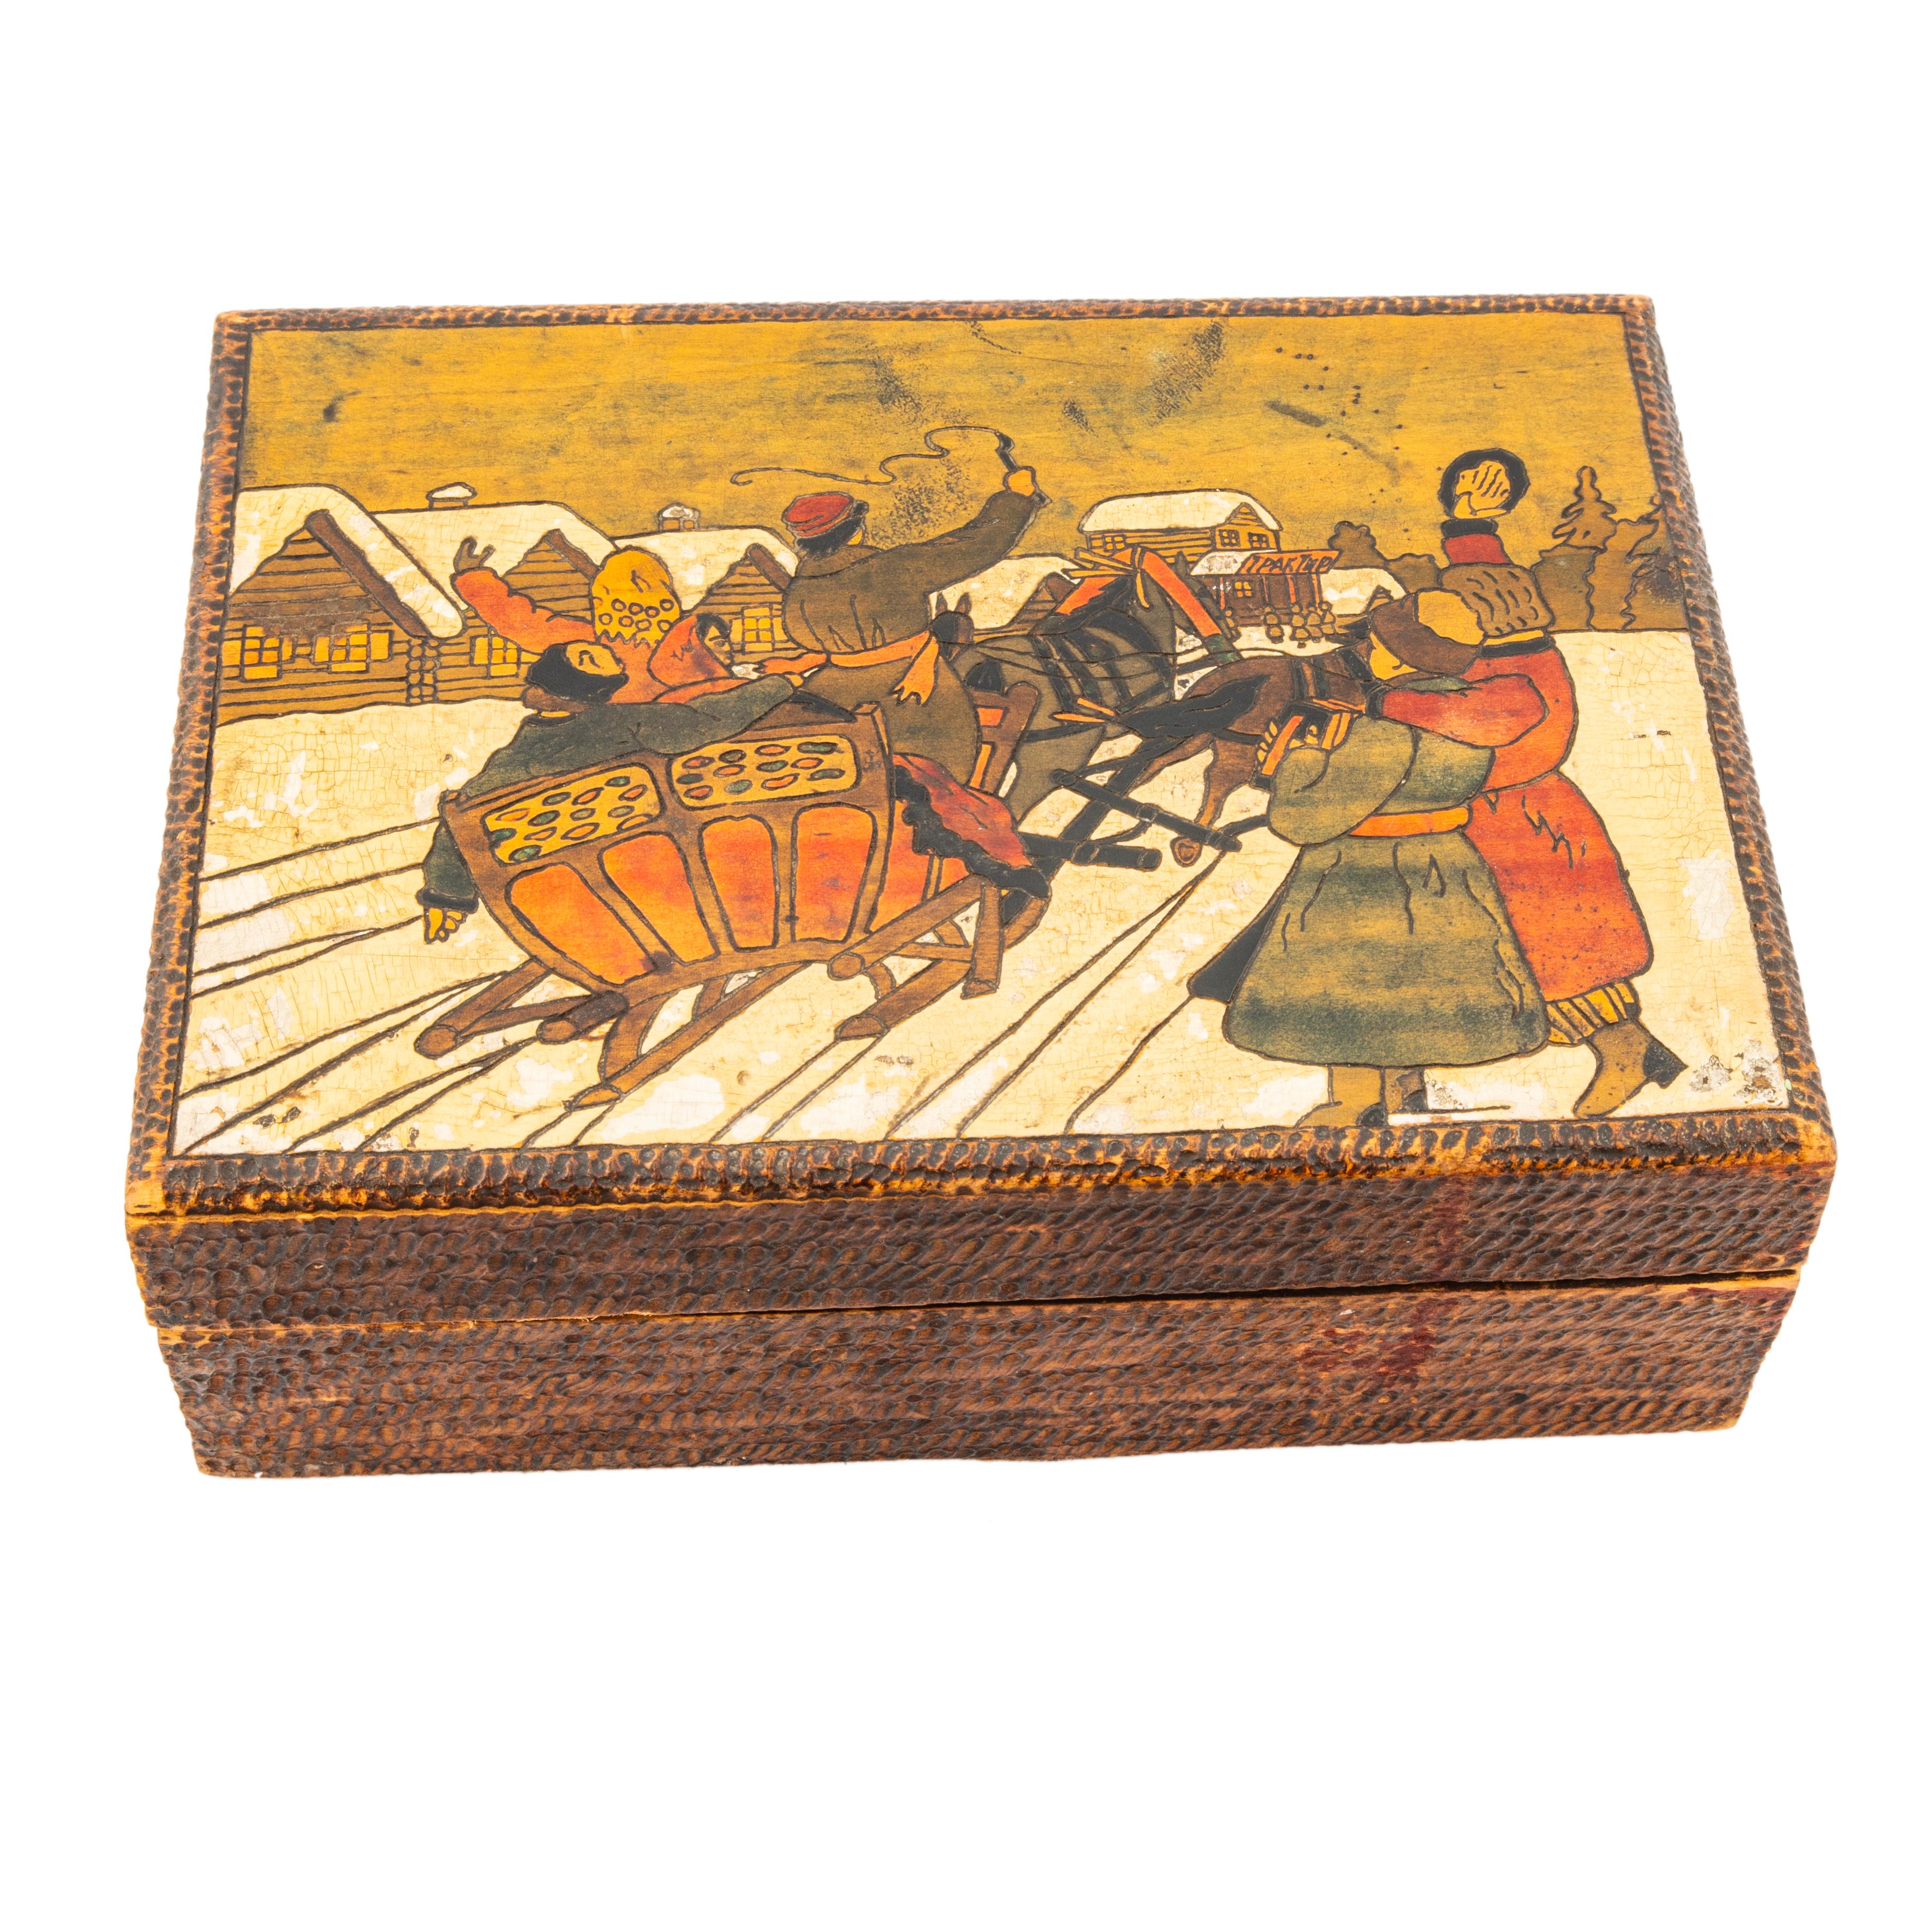 Das Titelbild zeigt den Blick auf ein Gespann, das einen traditionellen russischen Schlitten durch eine Winterlandschaft zieht, wobei die drei Pferde von einem Kutscher mit rotem Hut mit der Peitsche angetrieben werden. Zwei zufriedene Frauen in